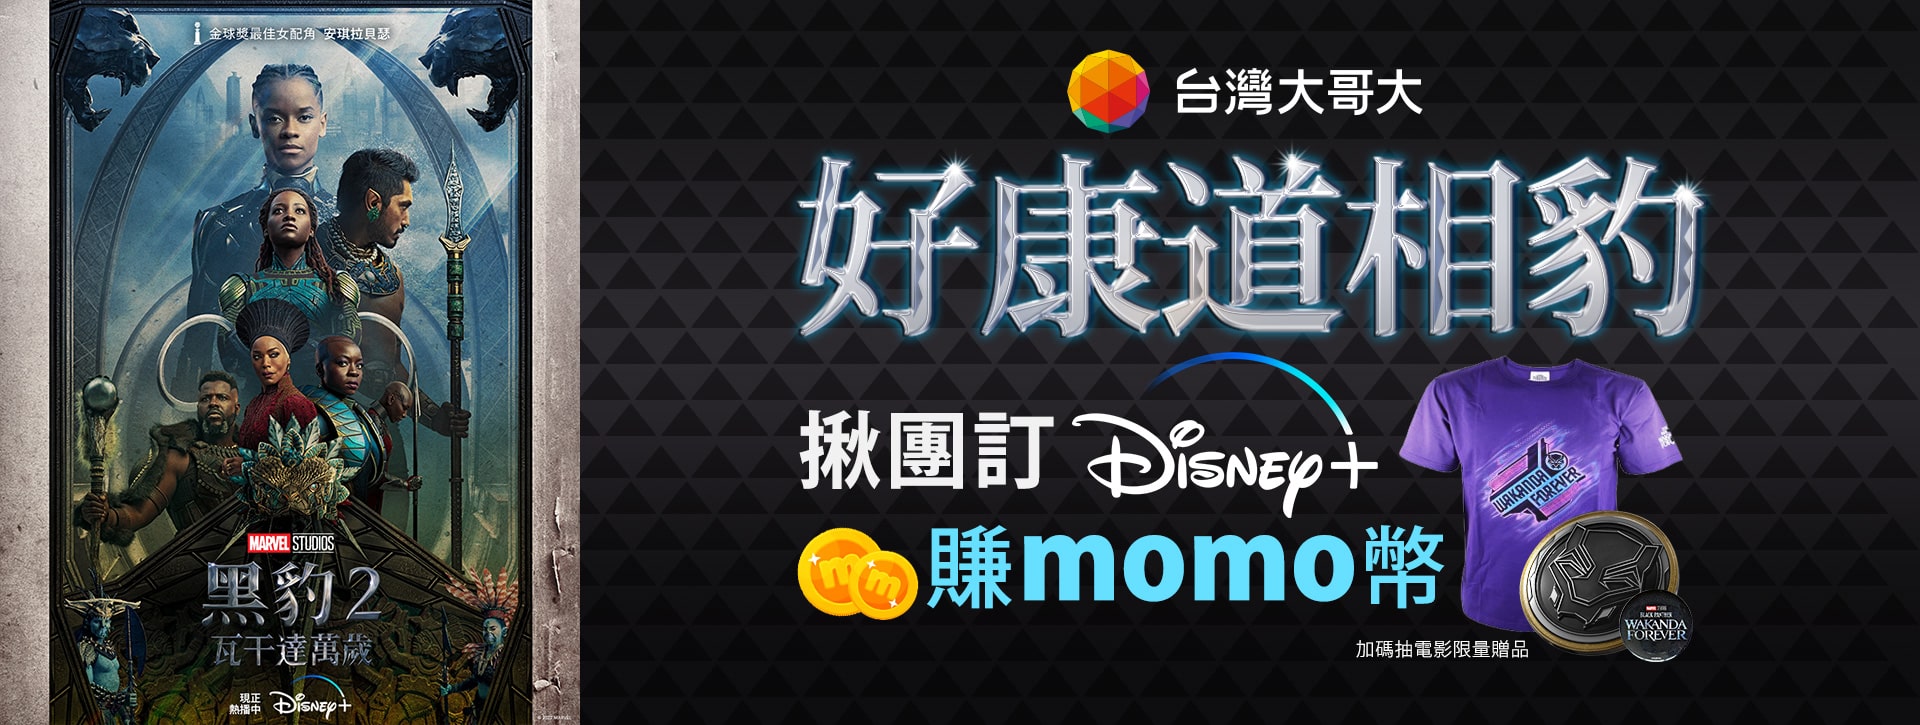 [情報] 訂台哥大Disney+送momo幣